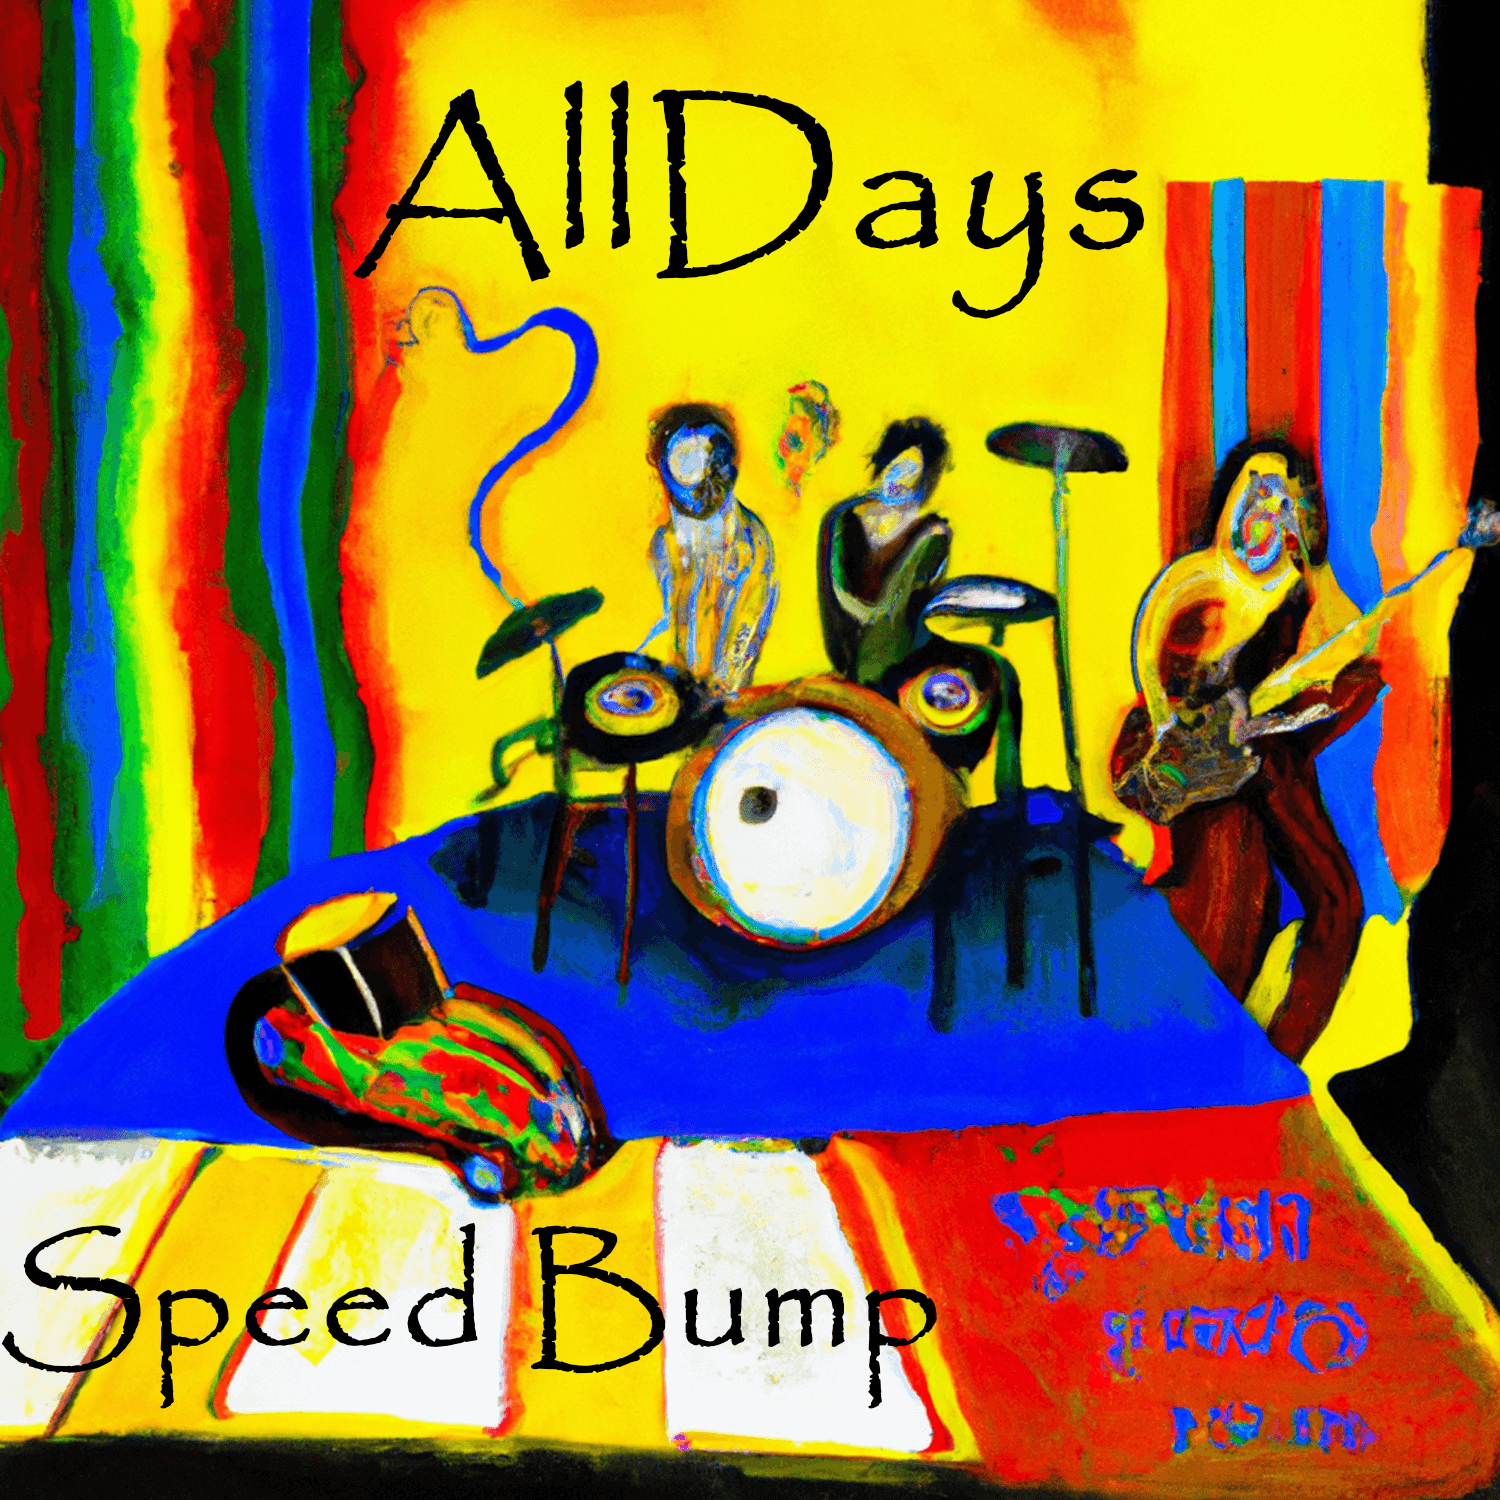 AllDays "Speed Bump" Full Song NFT 10/12